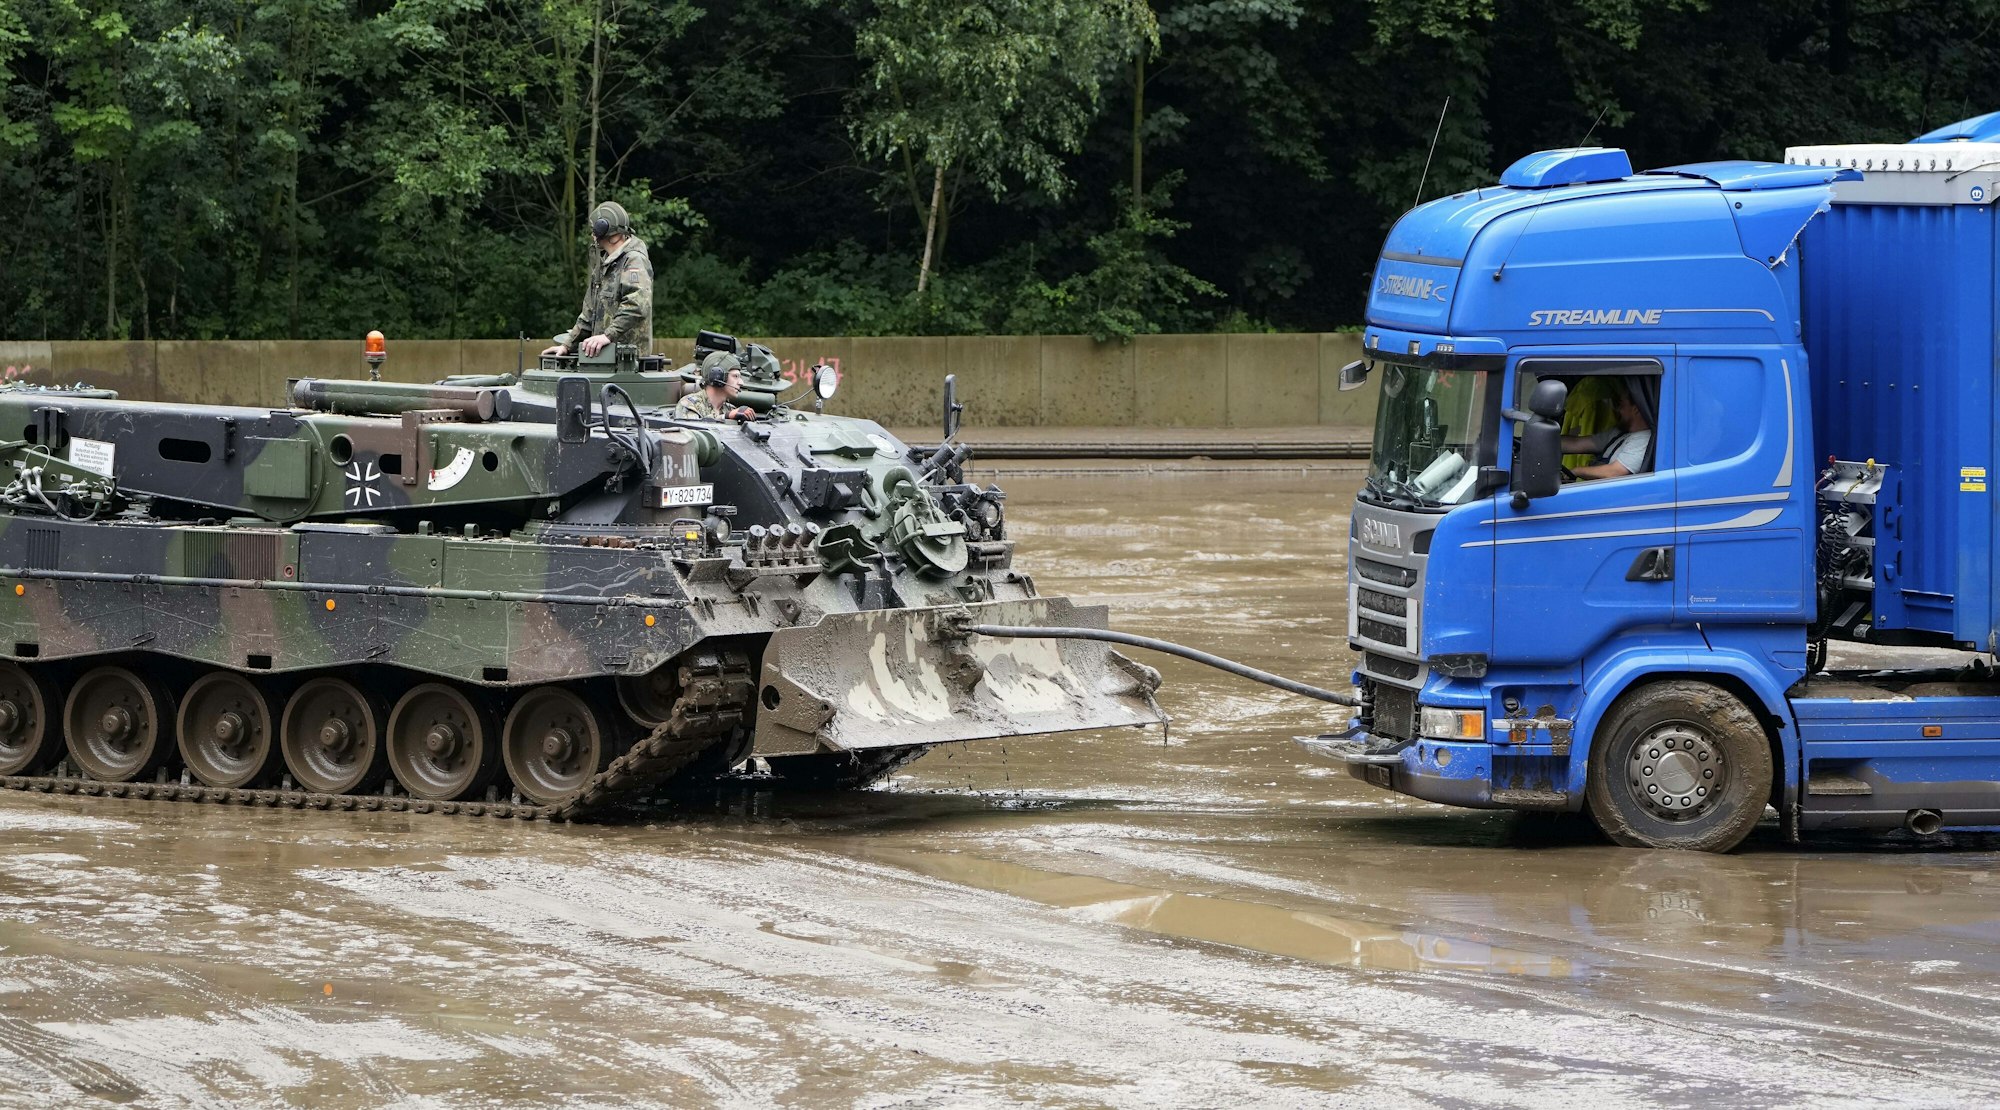 Ein Panzer der Bundeswehr zieht am Donnerstag (15. Juli) einen Lkw in Hagen aus dem Schlamm, nachdem es dort zu Überschwemmungen kam. Die Bundeswehr unterstützt die Hilfs- und Aufräumarbeiten in der Region.